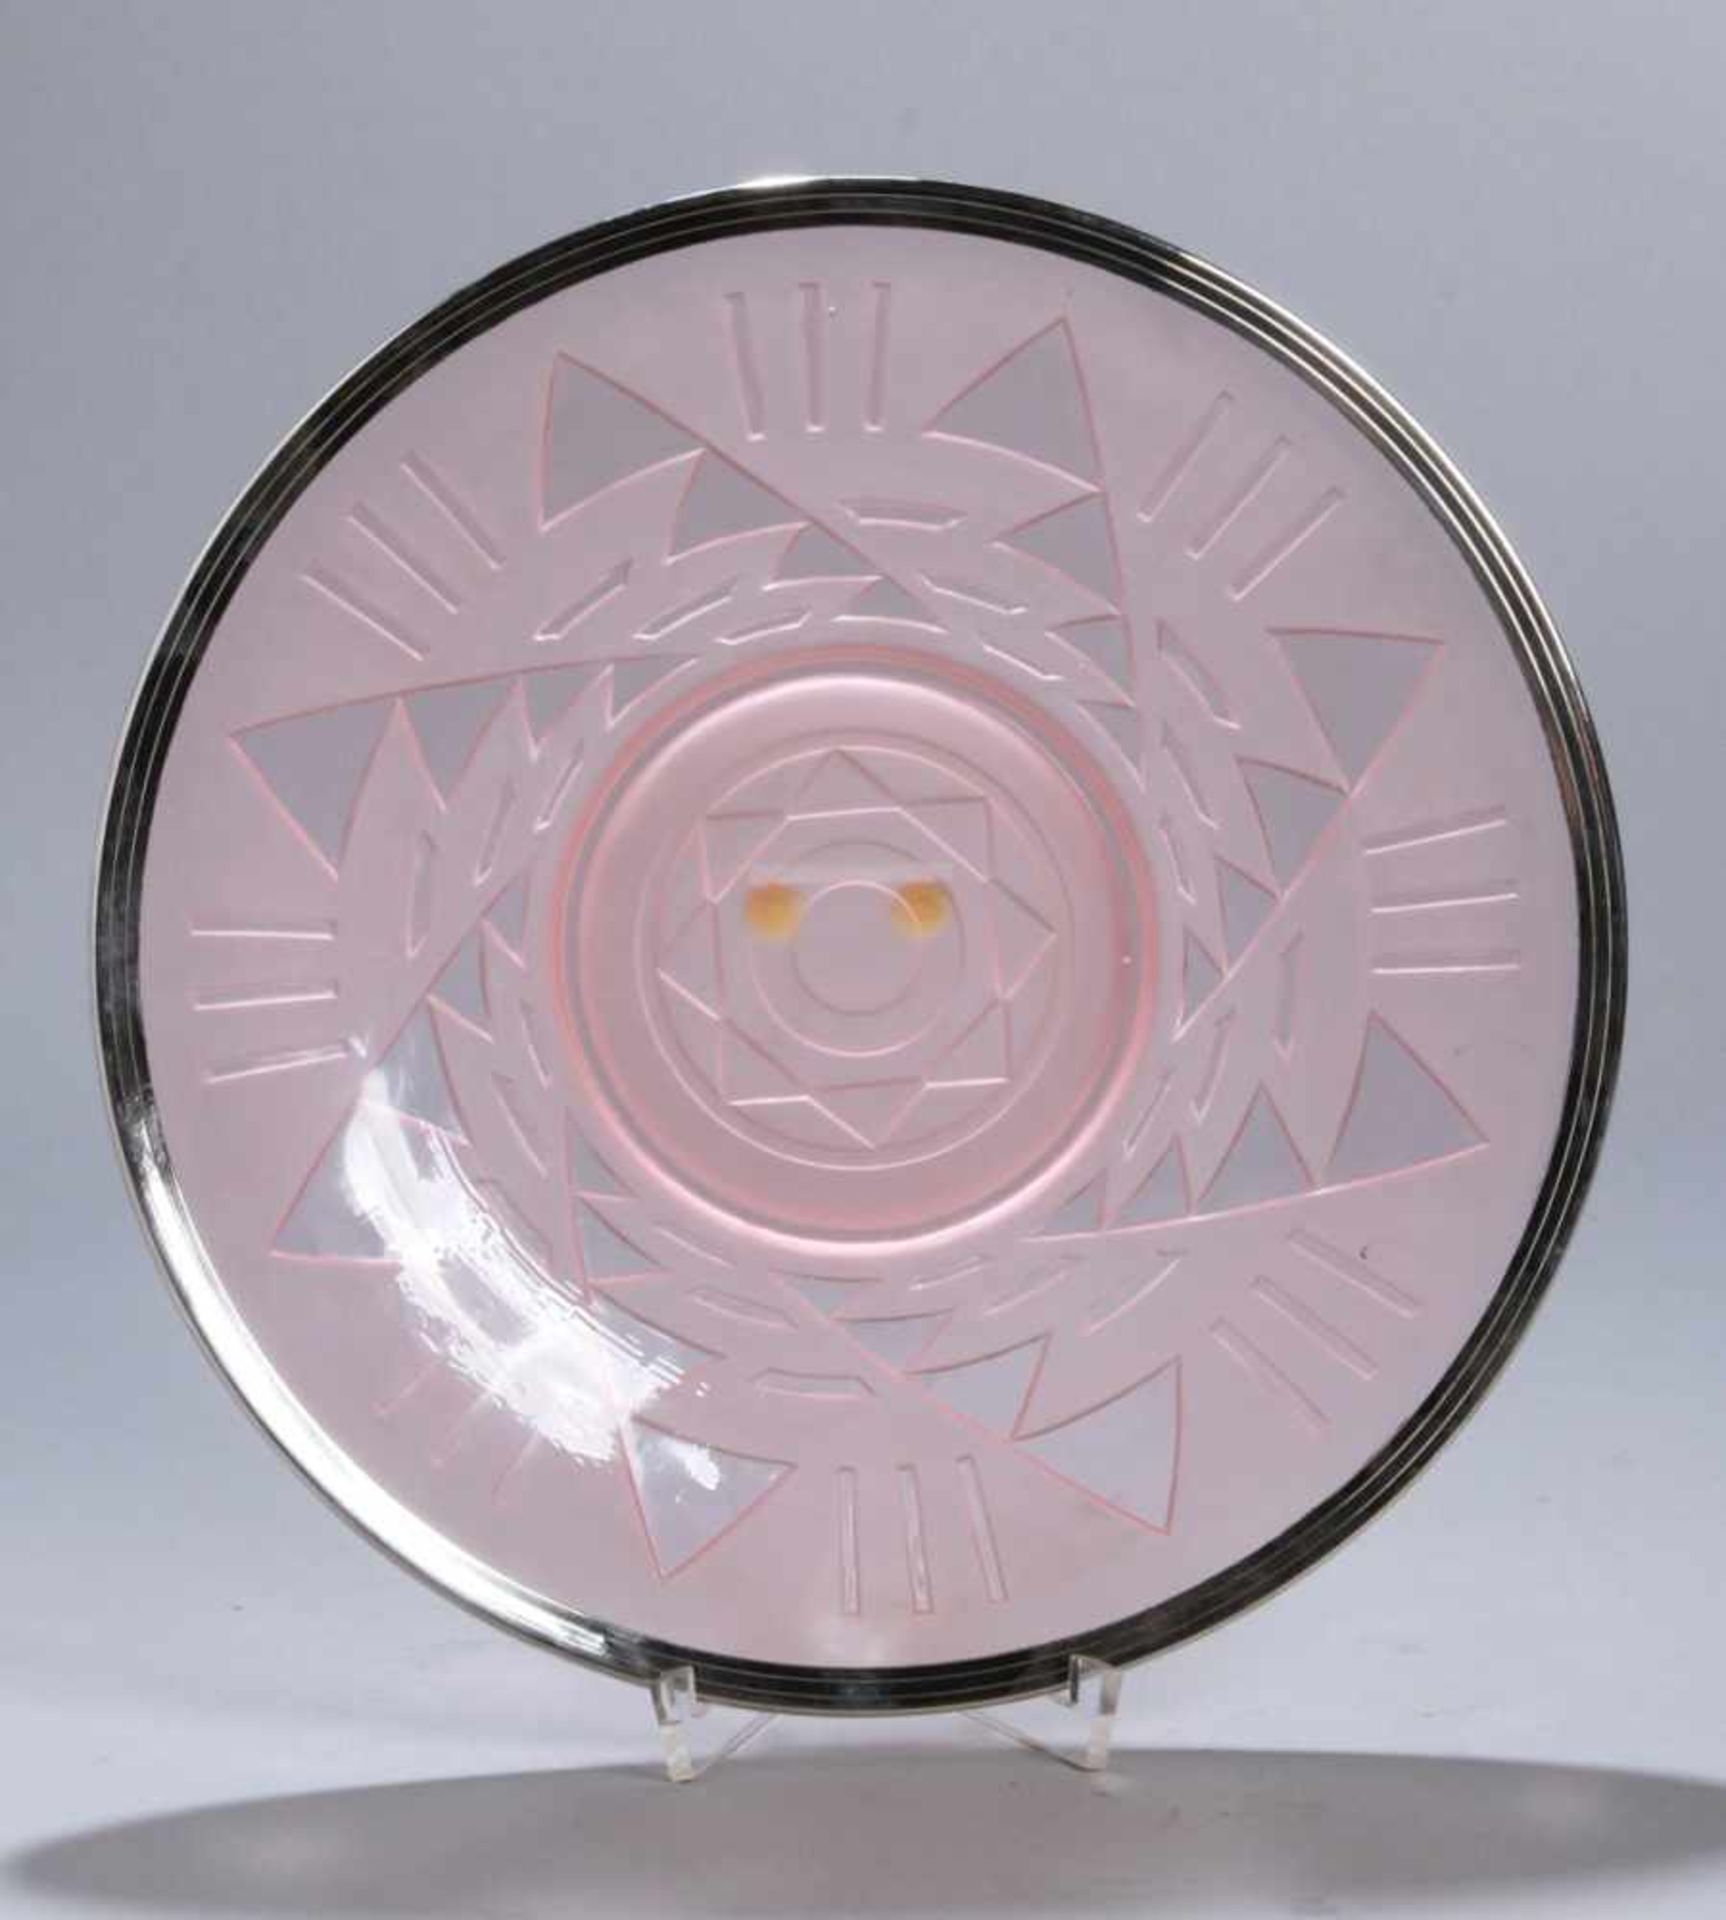 Art Déco Glas-Teller, Frankreich, über flachem Standring runde Form, rosafarbenesPressglas, Boden